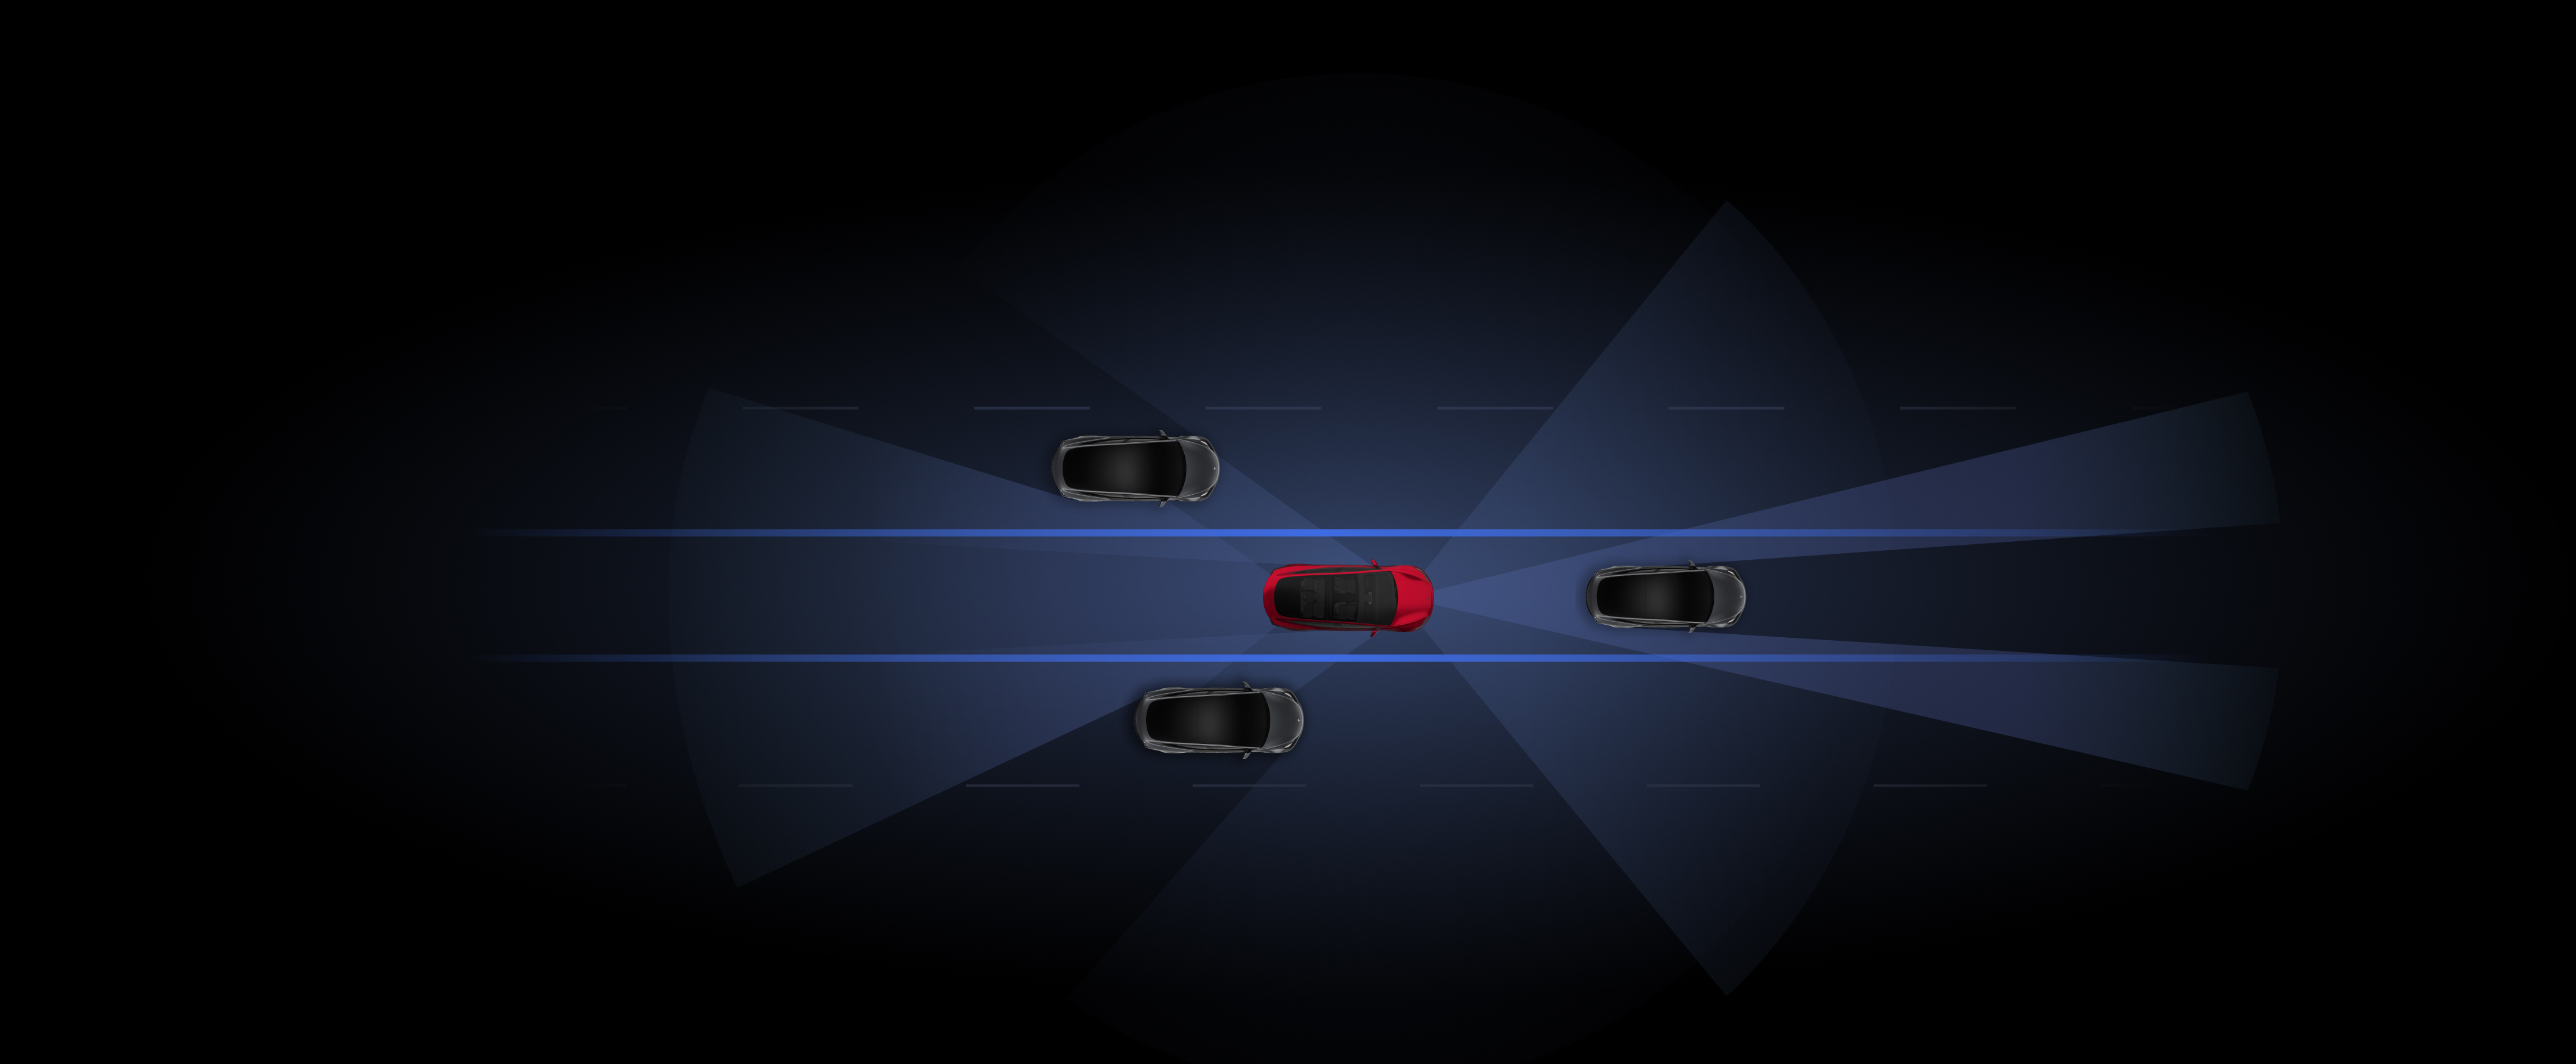 Απεικόνιση γκρι και κόκκινων οχημάτων Tesla που χρησιμοποιούν λειτουργίες Autopilot. 